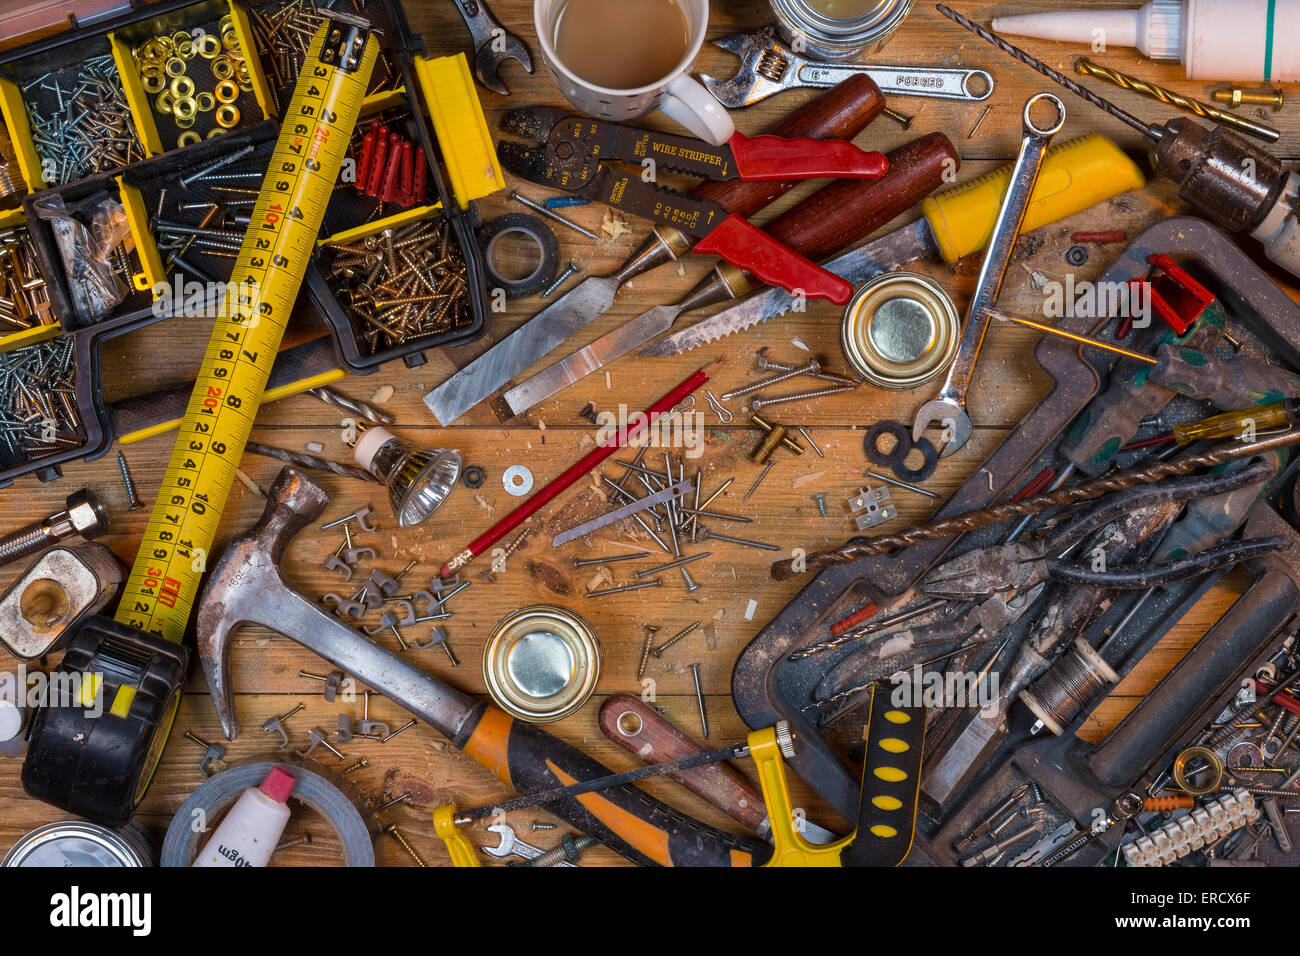 Pflege zu Hause - eine unordentliche Werkbank voller staubigen alten Werkzeuge und Schrauben. Stockfoto